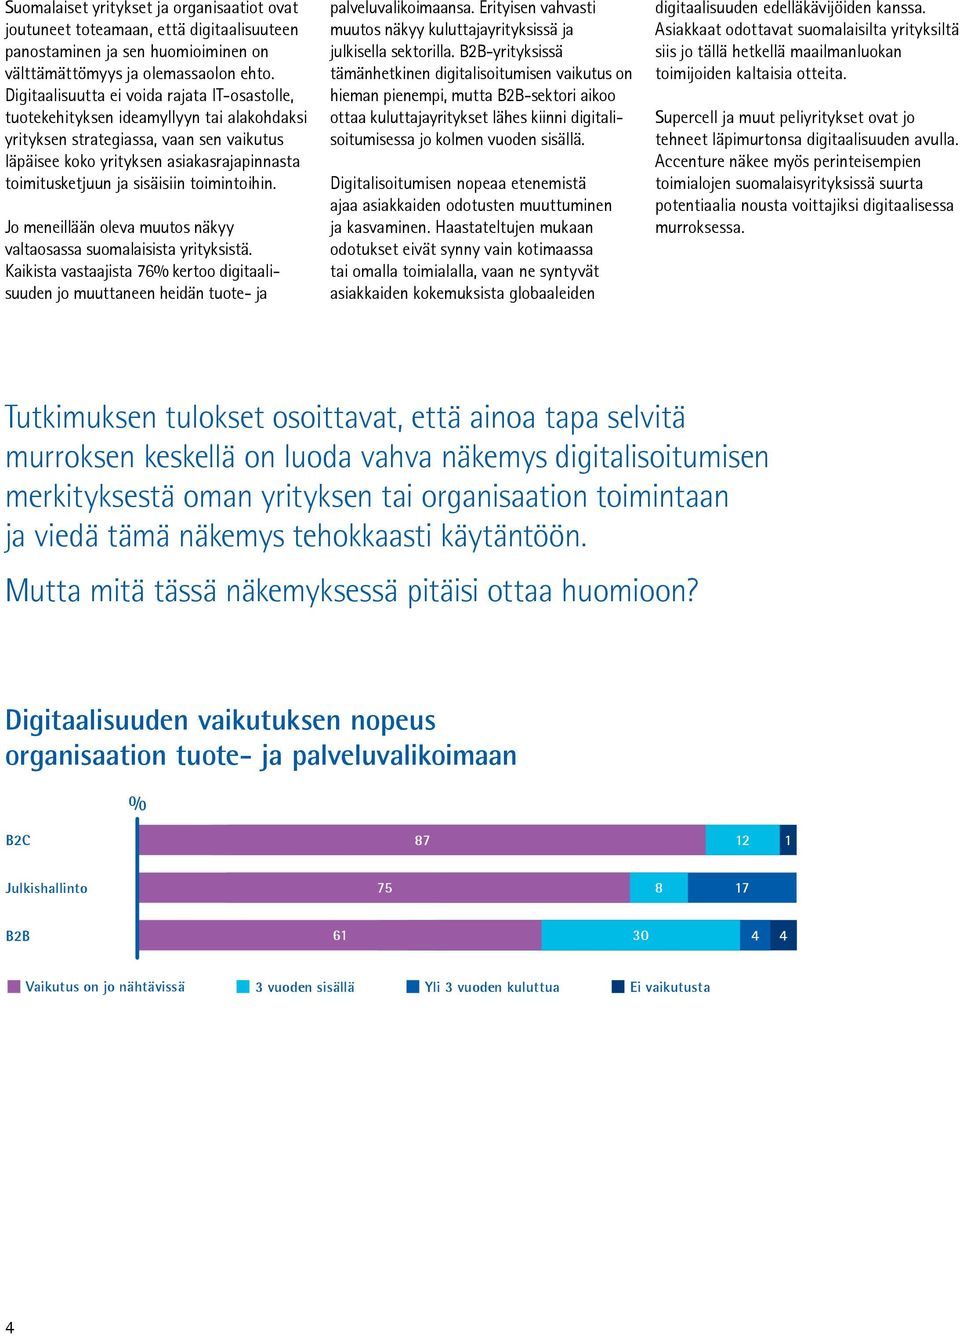 sisäisiin toimintoihin. Jo meneillään oleva muutos näkyy valtaosassa suomalaisista yrityksistä. Kaikista vastaajista 76% kertoo digitaalisuuden jo muuttaneen heidän tuote- ja palveluvalikoimaansa.